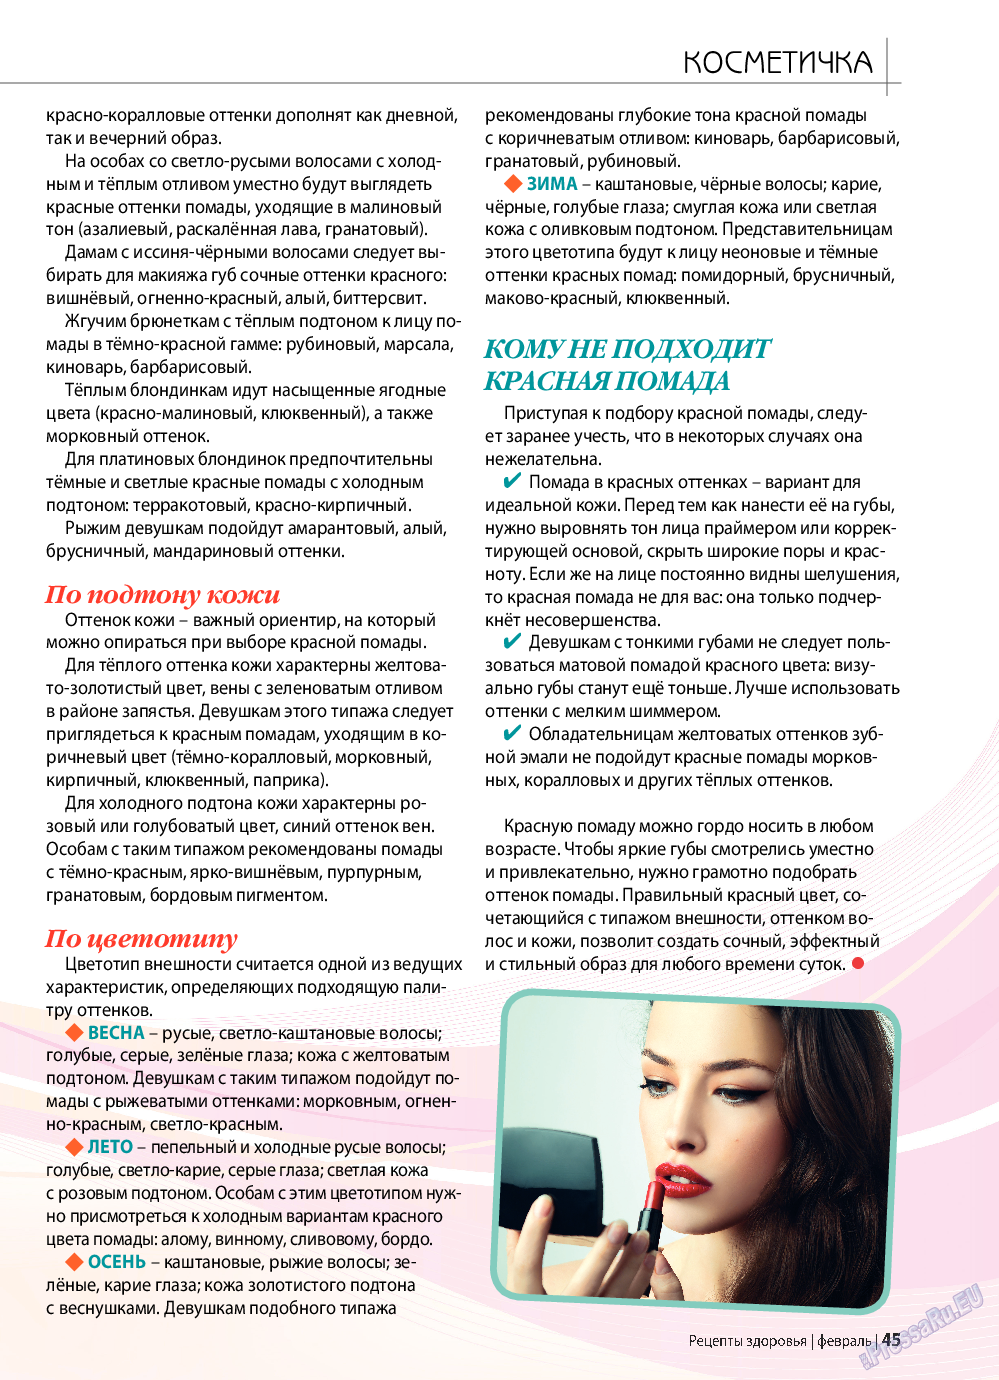 Рецепты здоровья, журнал. 2019 №117 стр.45